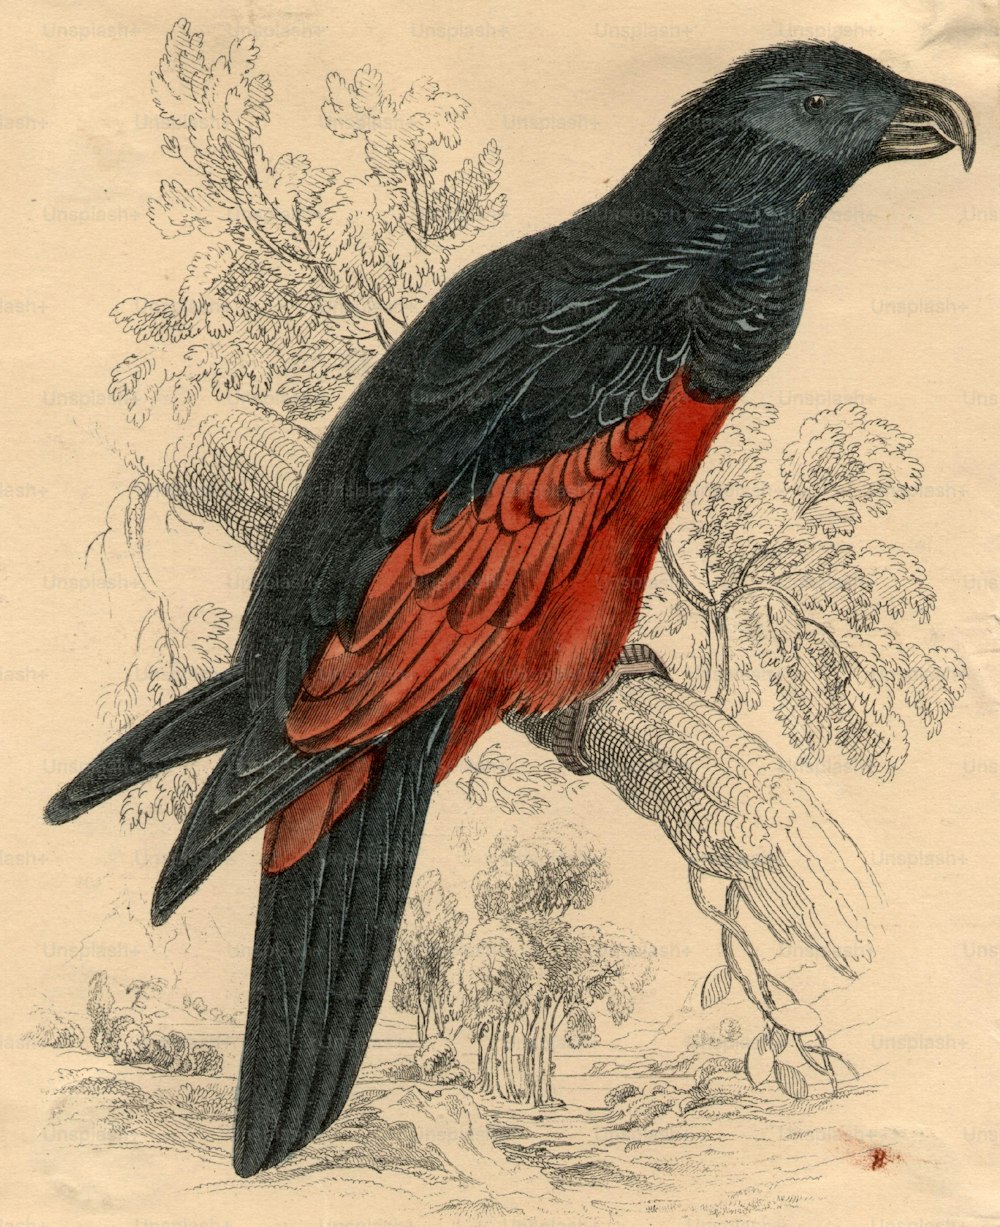 vers 1850 : Dasyptilus Pequeth, un perroquet originaire d’Australie.  (Photo de Hulton Archive/Getty Images)